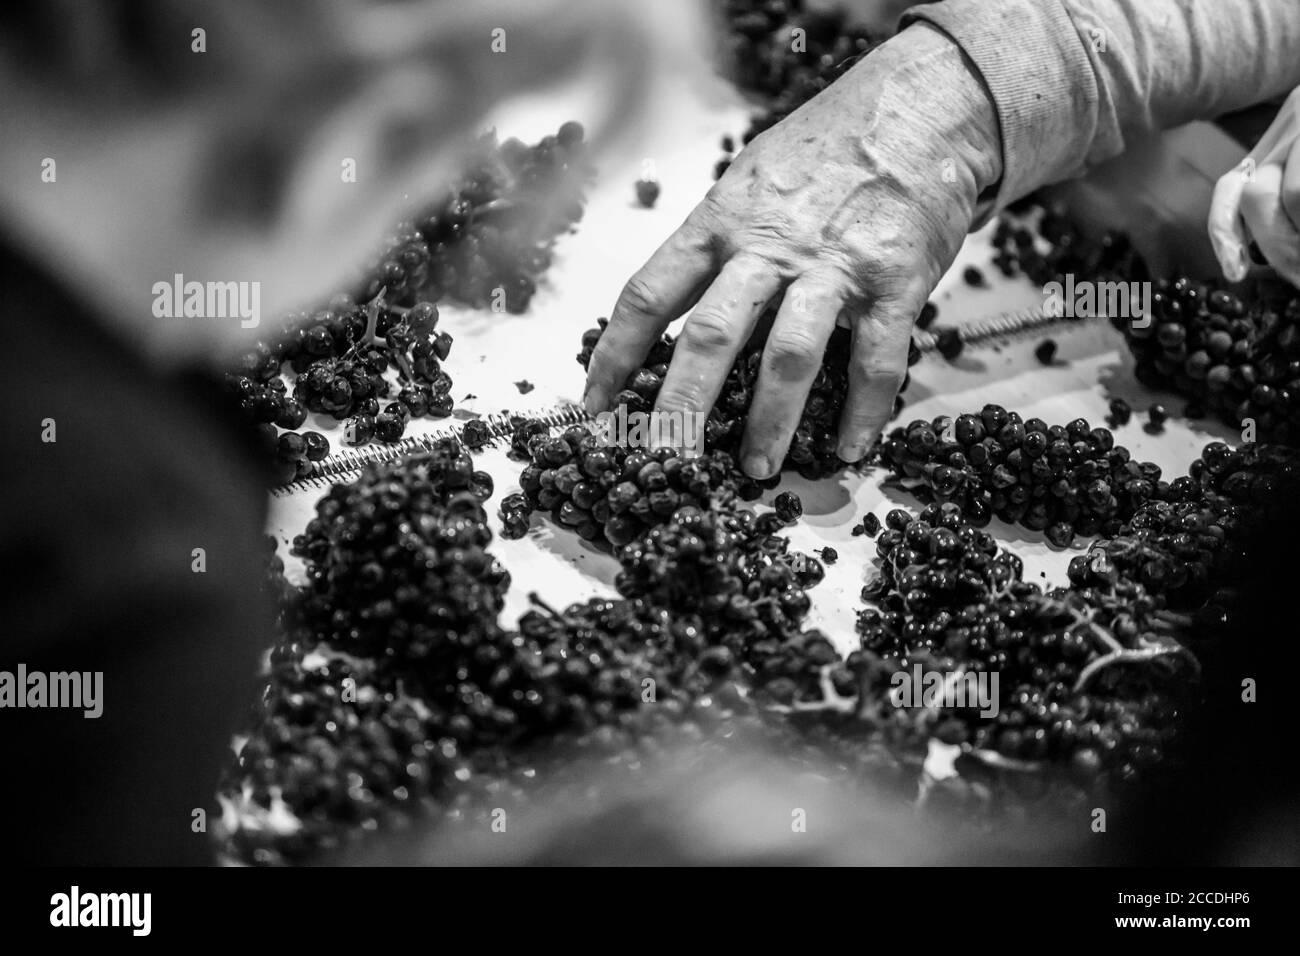 Immagine granulosa in bianco e nero ad alto contrasto delle mani maschili che smistano le uve da vino su un nastro trasportatore. Foto Stock